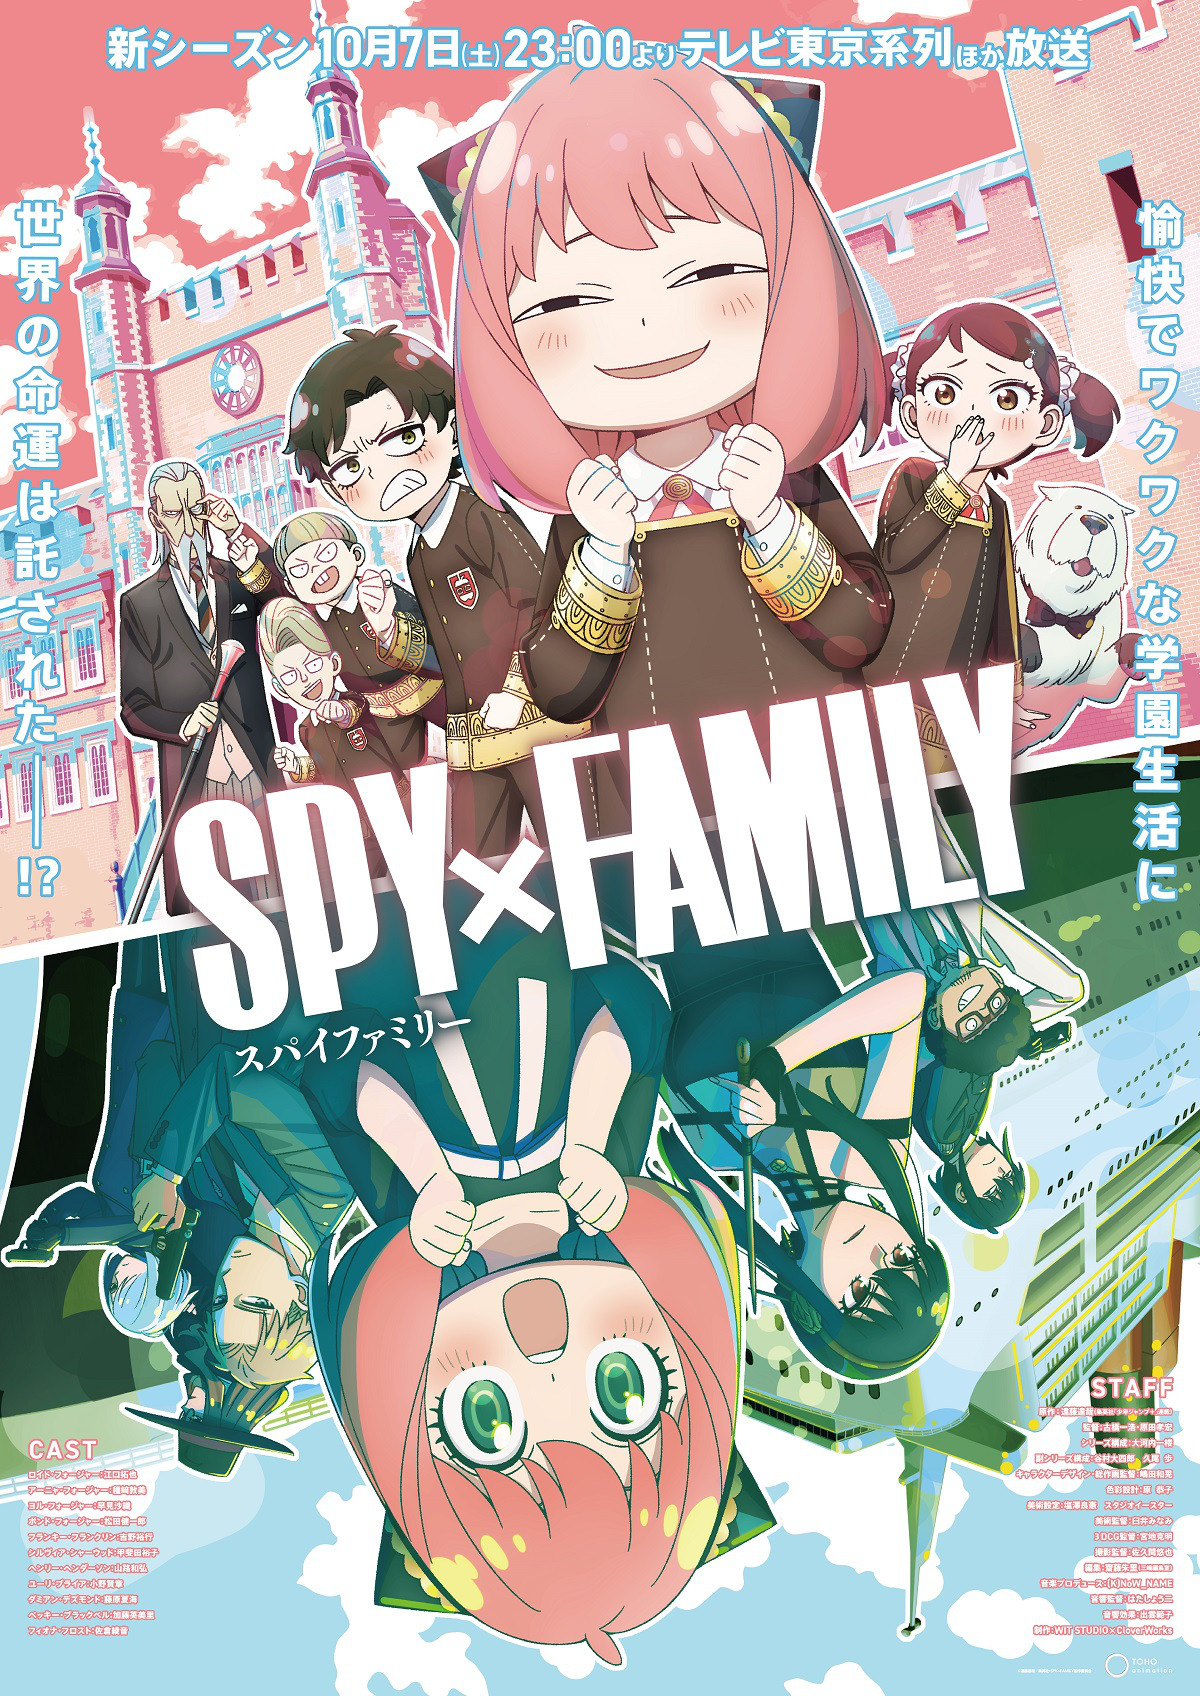 Spy x family temporada 2 CAP 2, By Mr Sempai